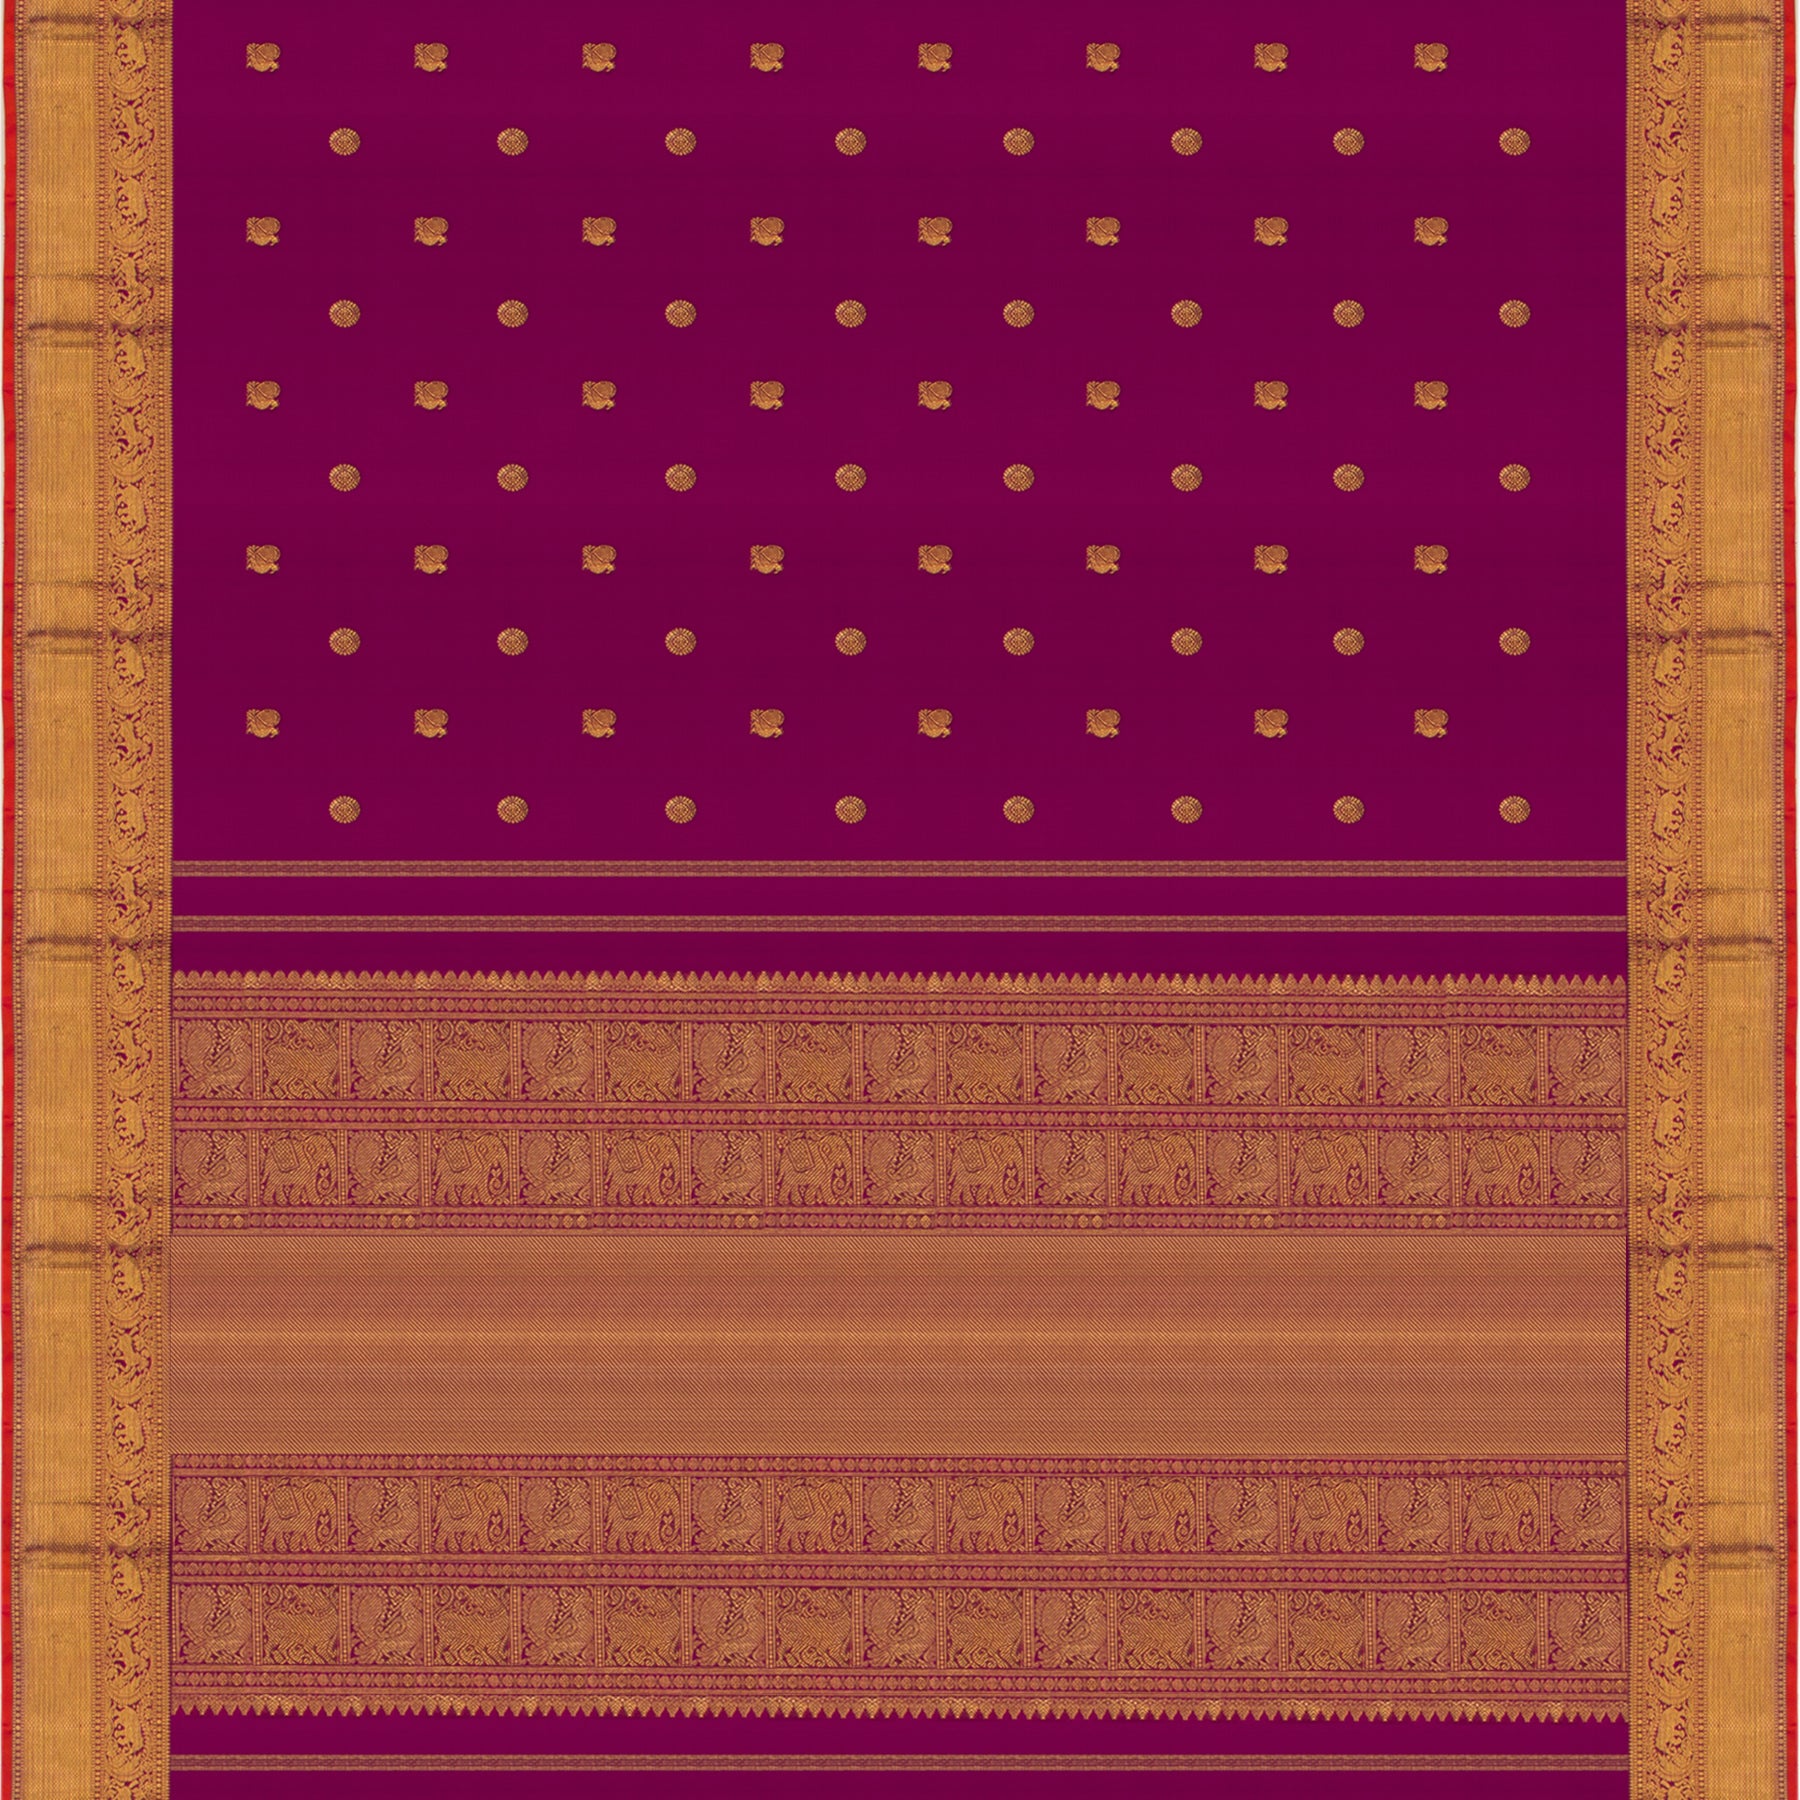 Kanakavalli Kanjivaram Silk Sari 23-110-HS001-11602 - Full View